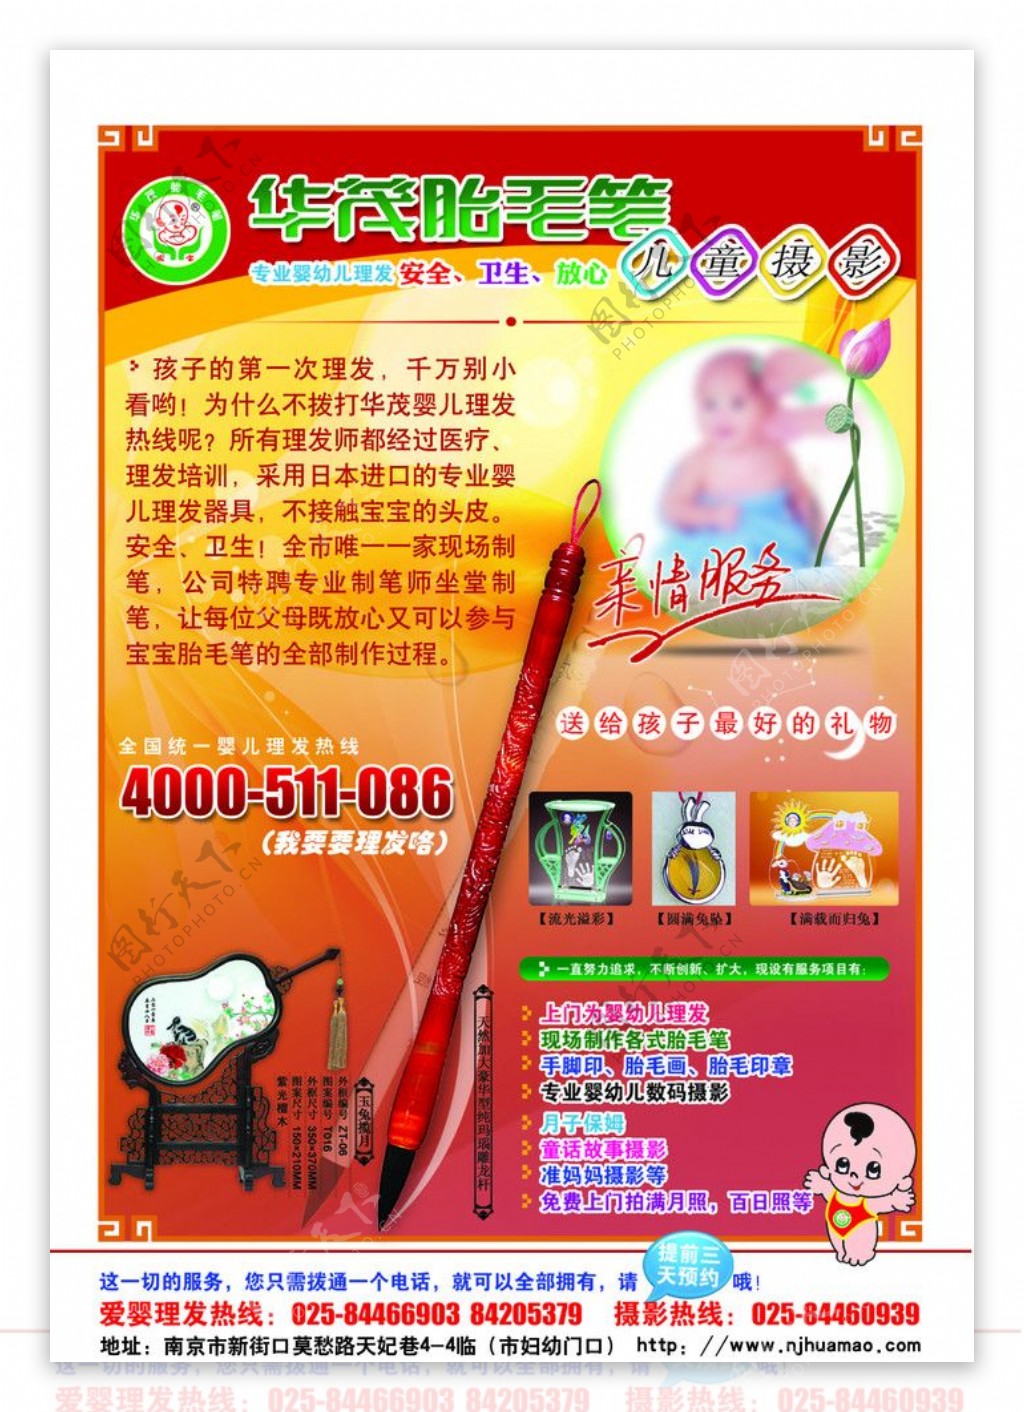 2012华茂胎毛笔宣传广告图片